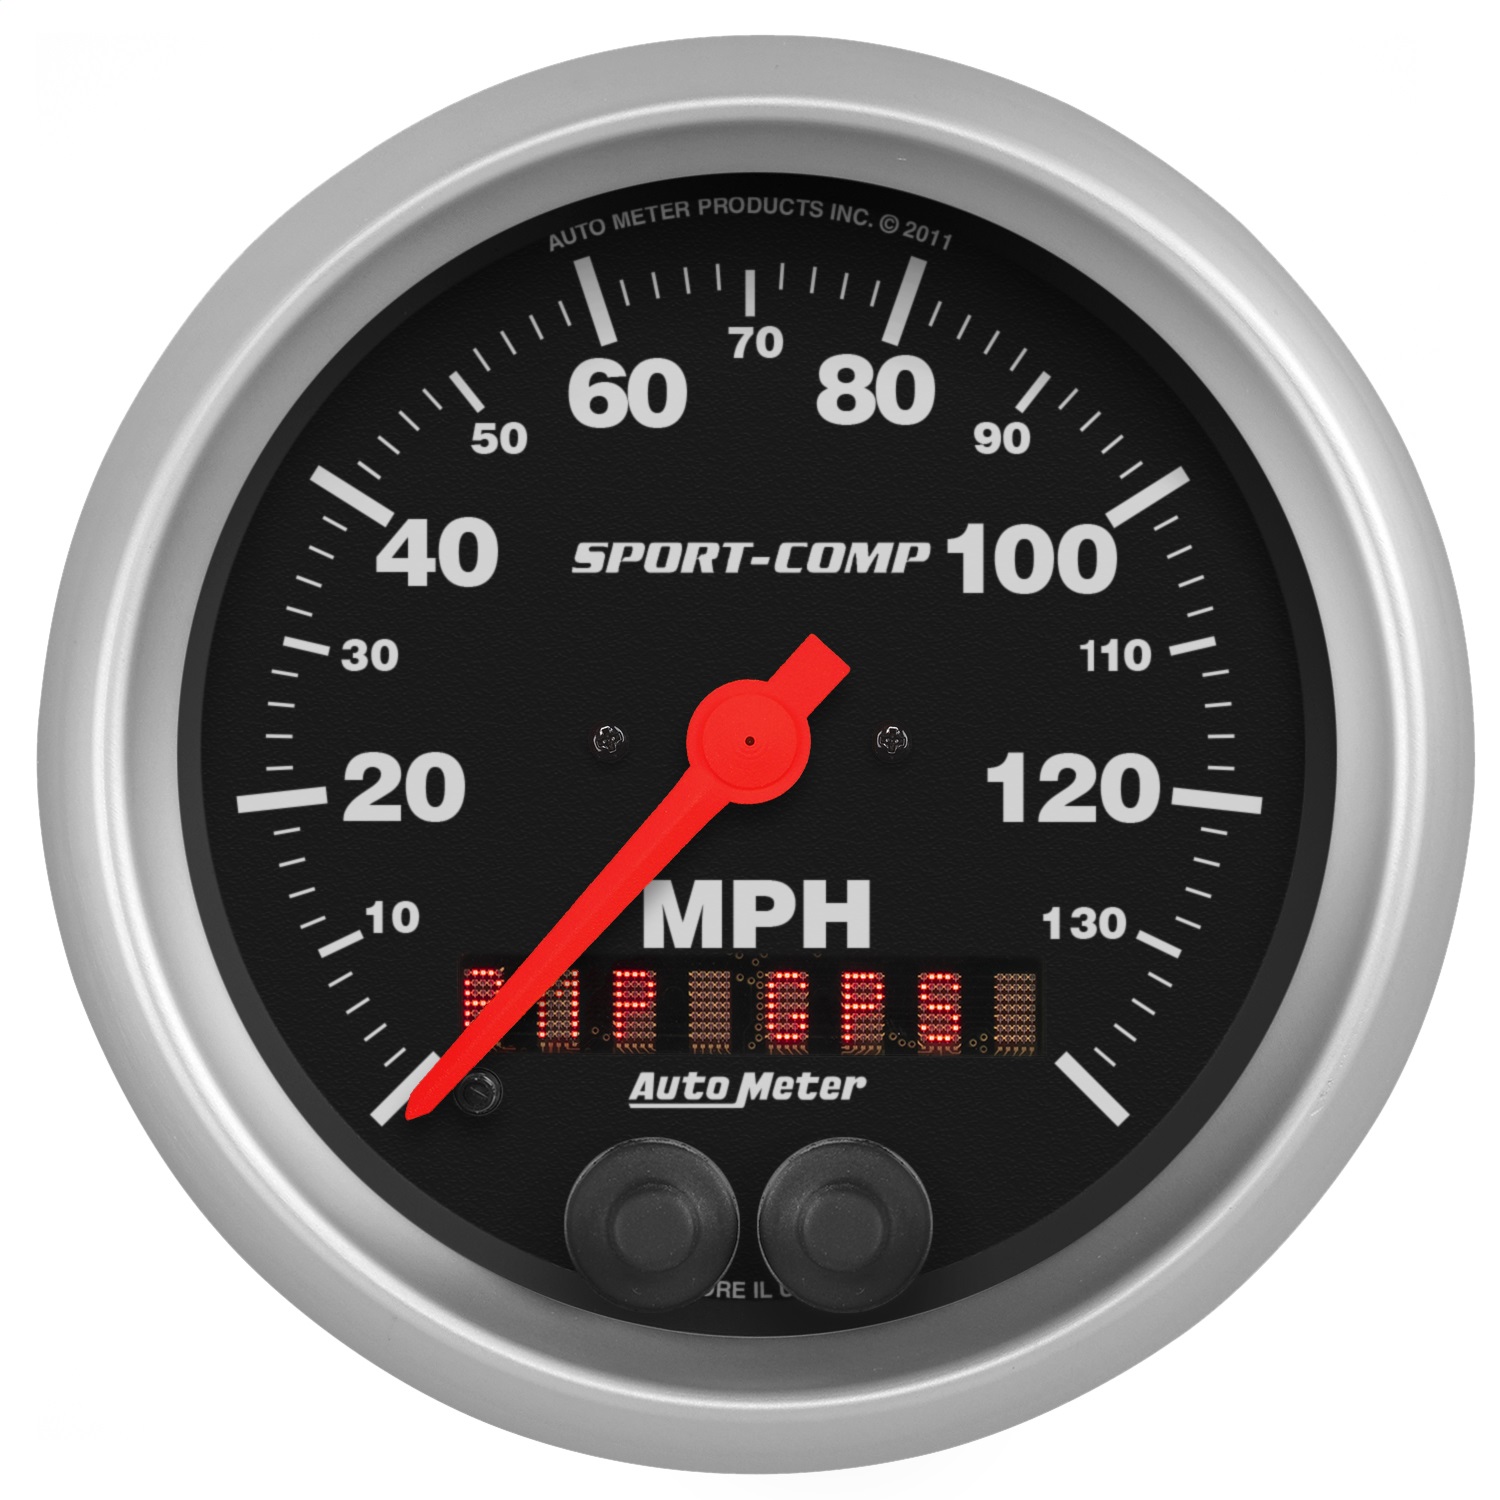 Auto Meter Auto Meter 3982 Sport-Comp; GPS Speedometer